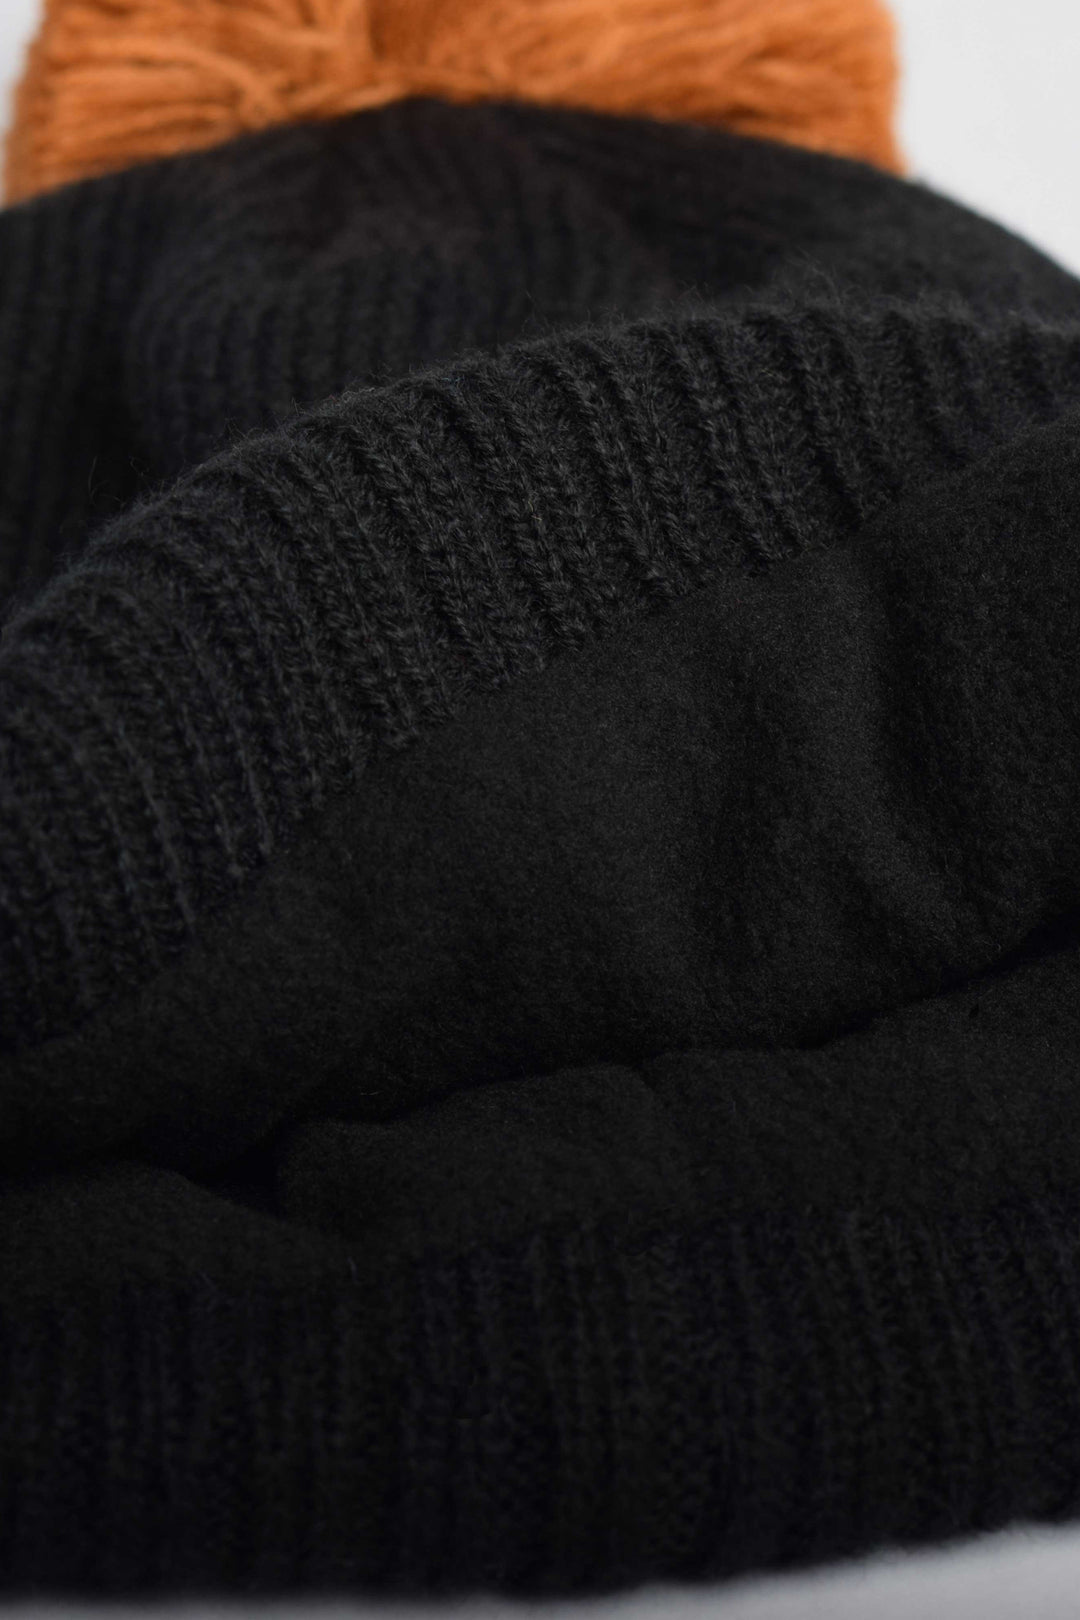 Tuque à pompon en tricot doublée en polar [Whistler series]